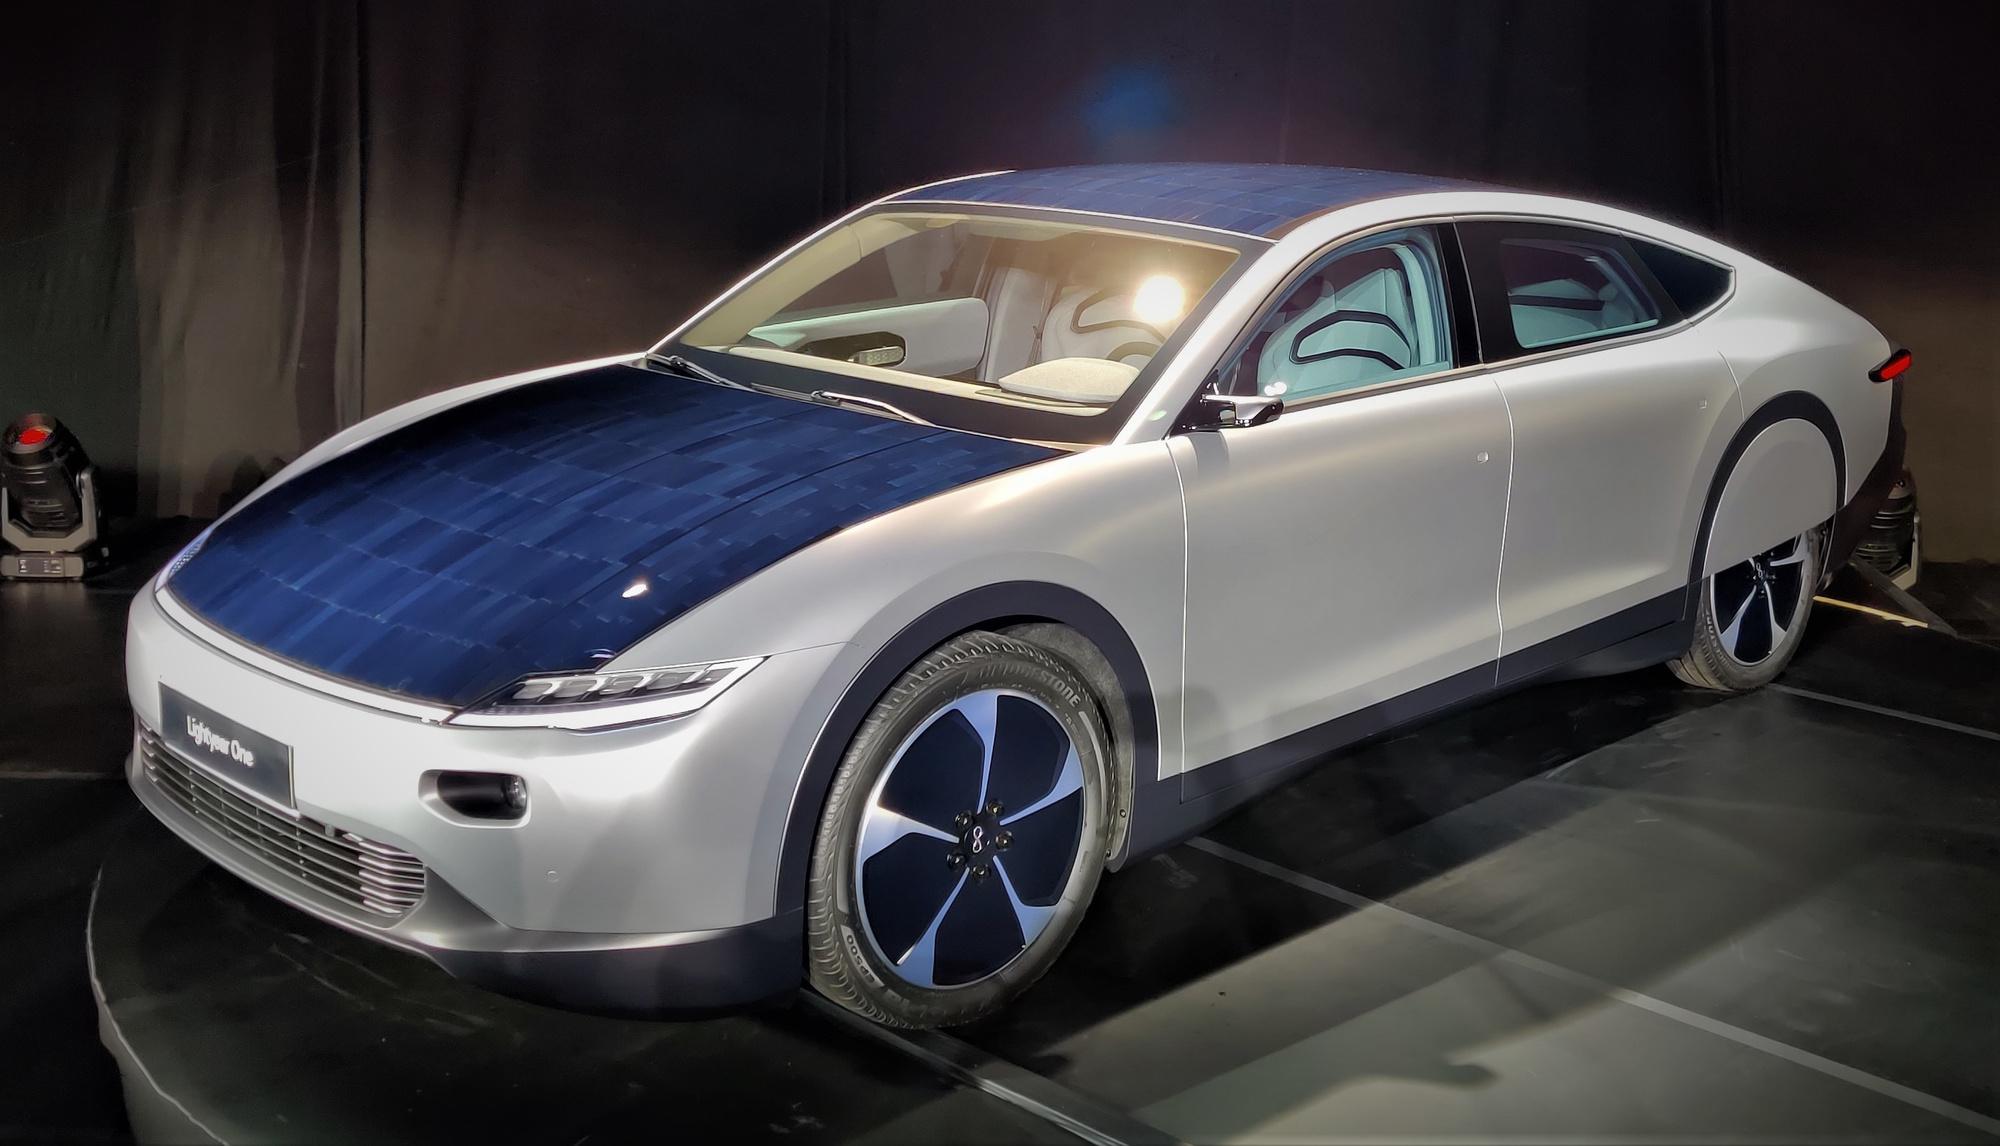 La voiture solaire de Lightyear représente-t-elle le futur de l'automobile?